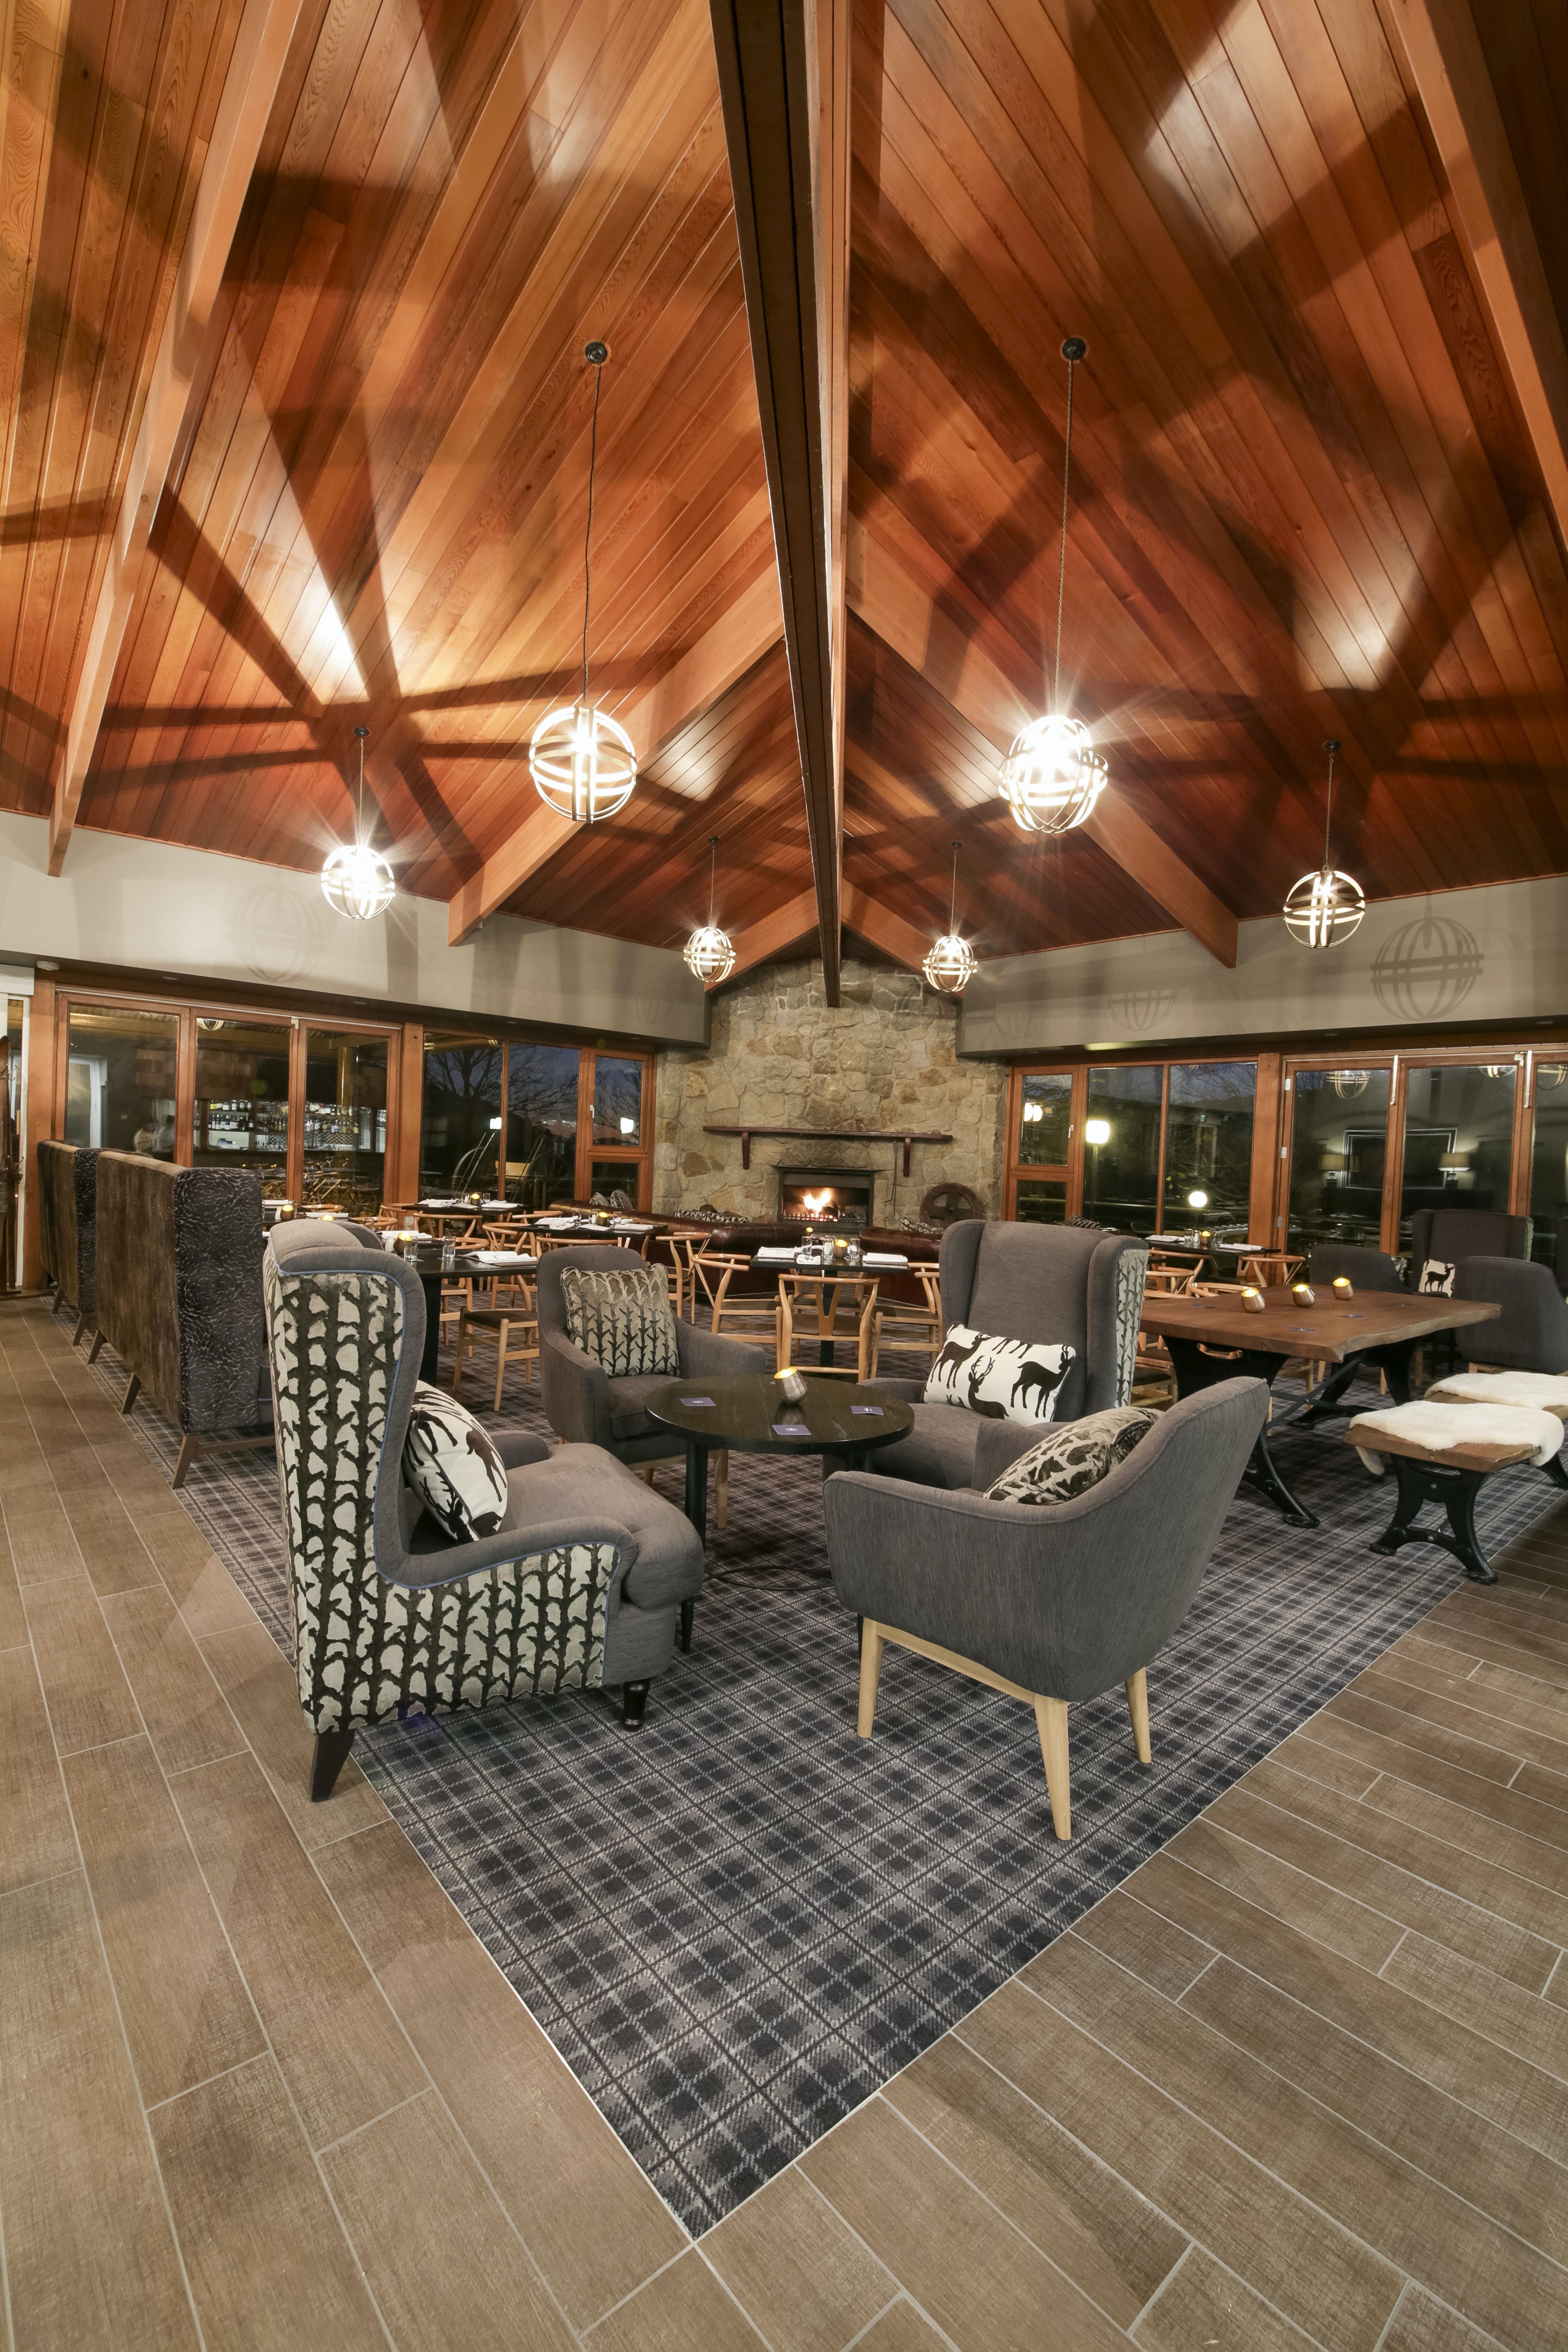 The Sebel Pinnacle Valley Resort - Tweed Heads Accommodation